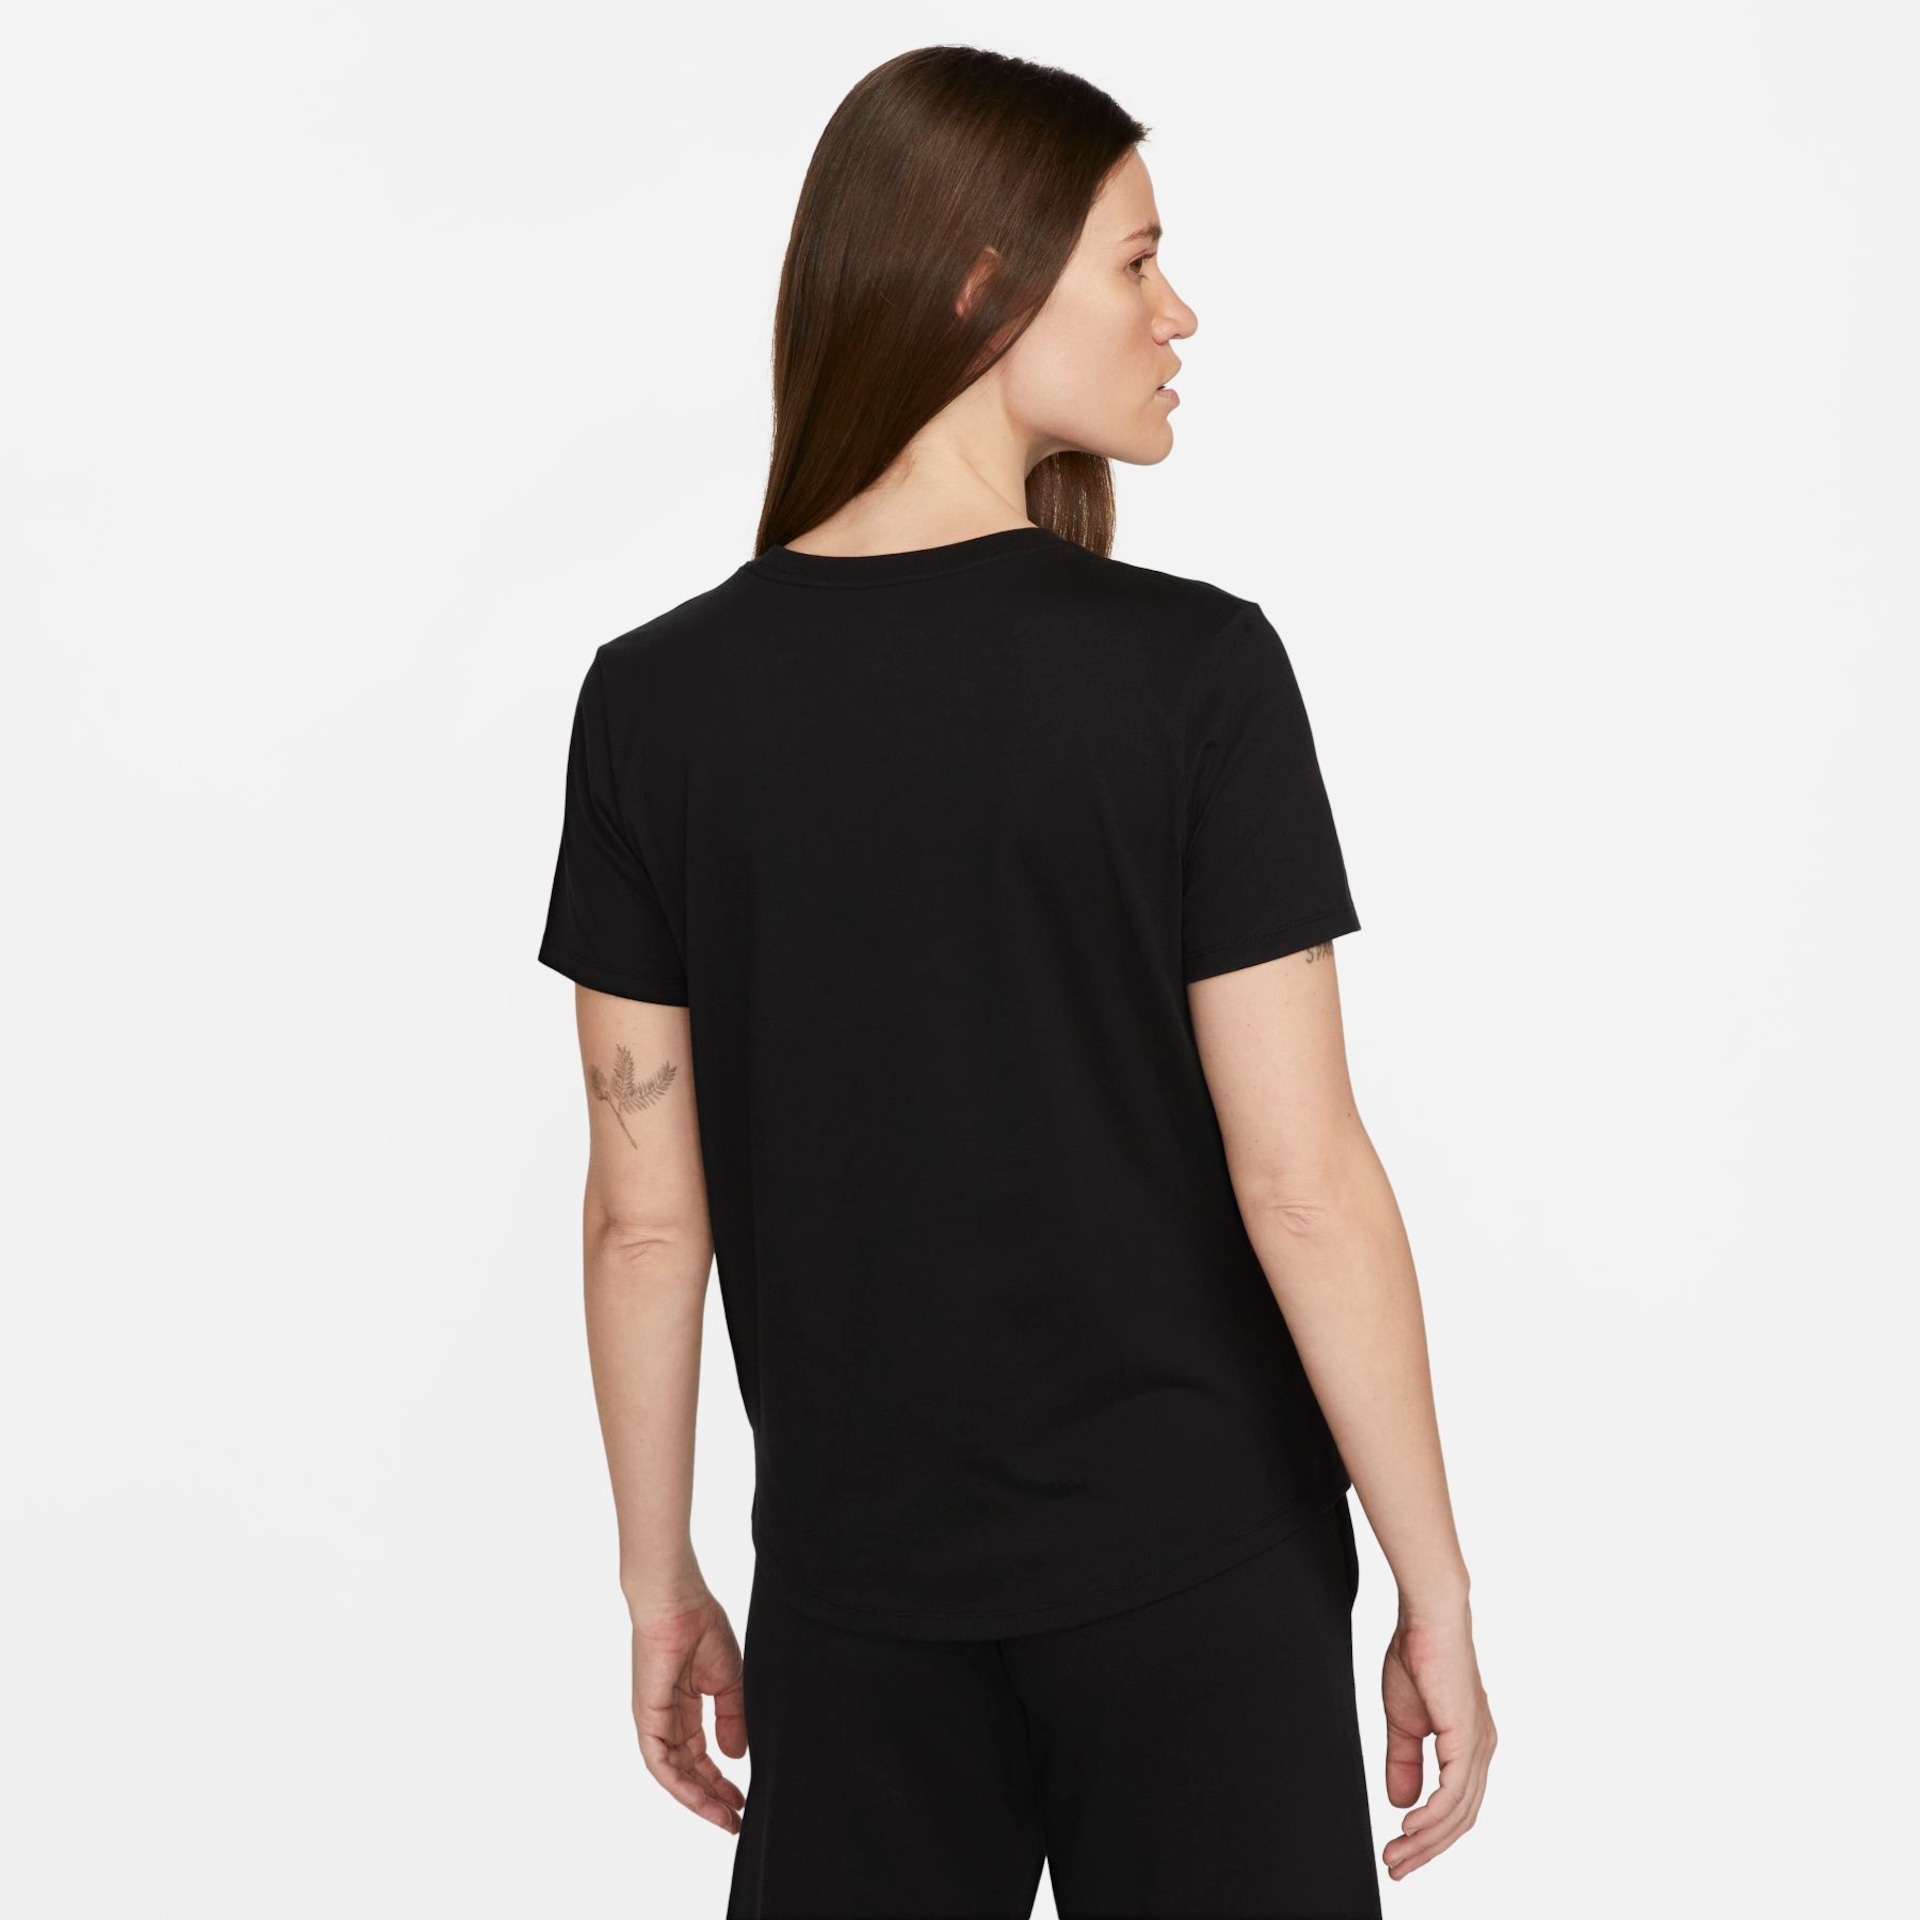 Camiseta Nike Sportswear Essentials Feminina - Foto 2